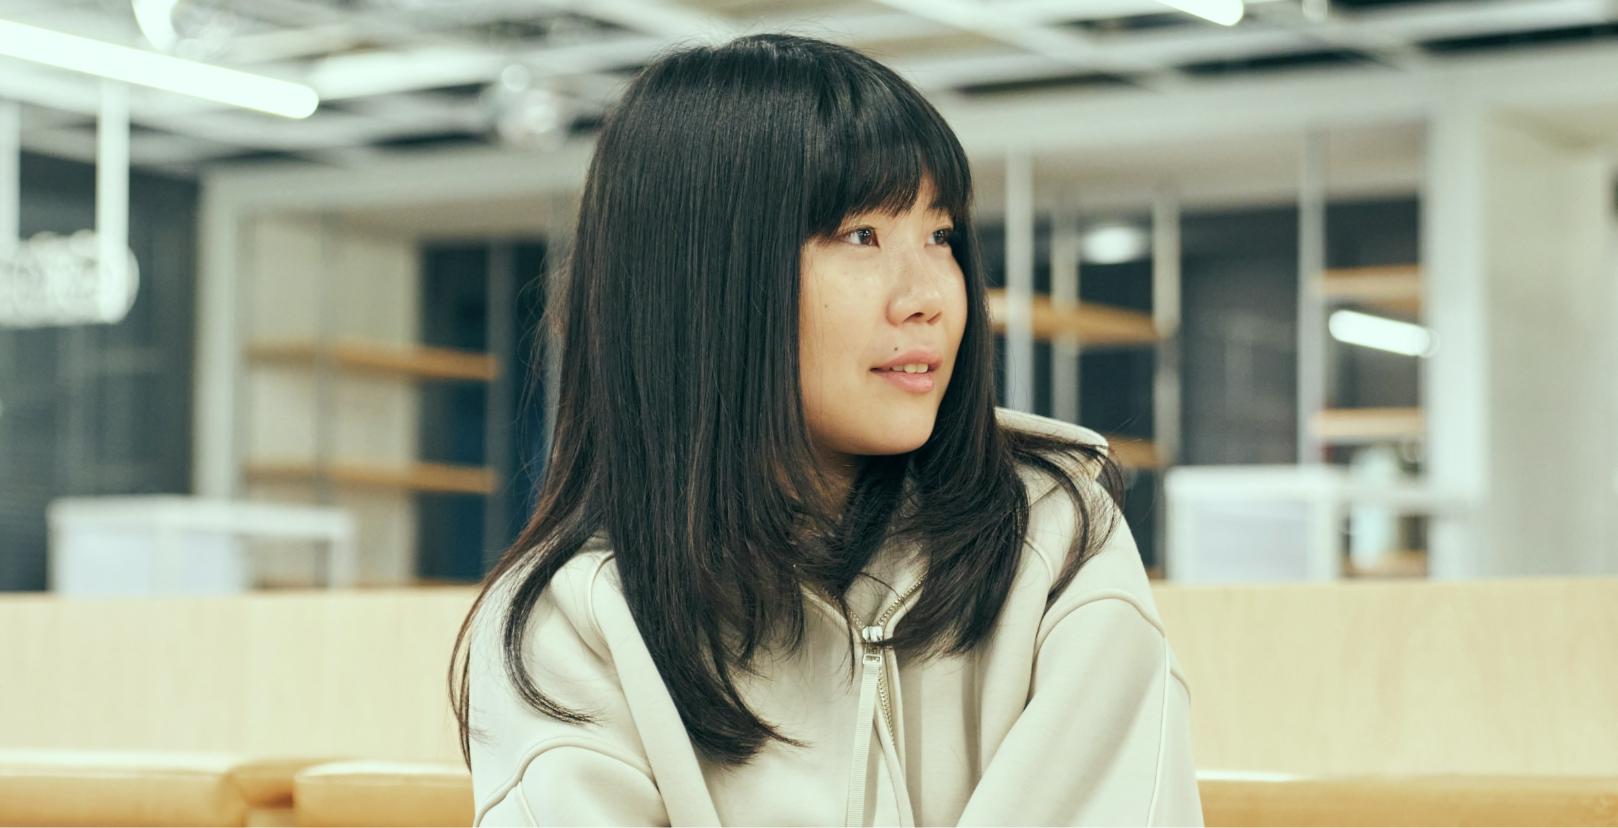 Haruko Miki listening to Mitsunori Tanaka